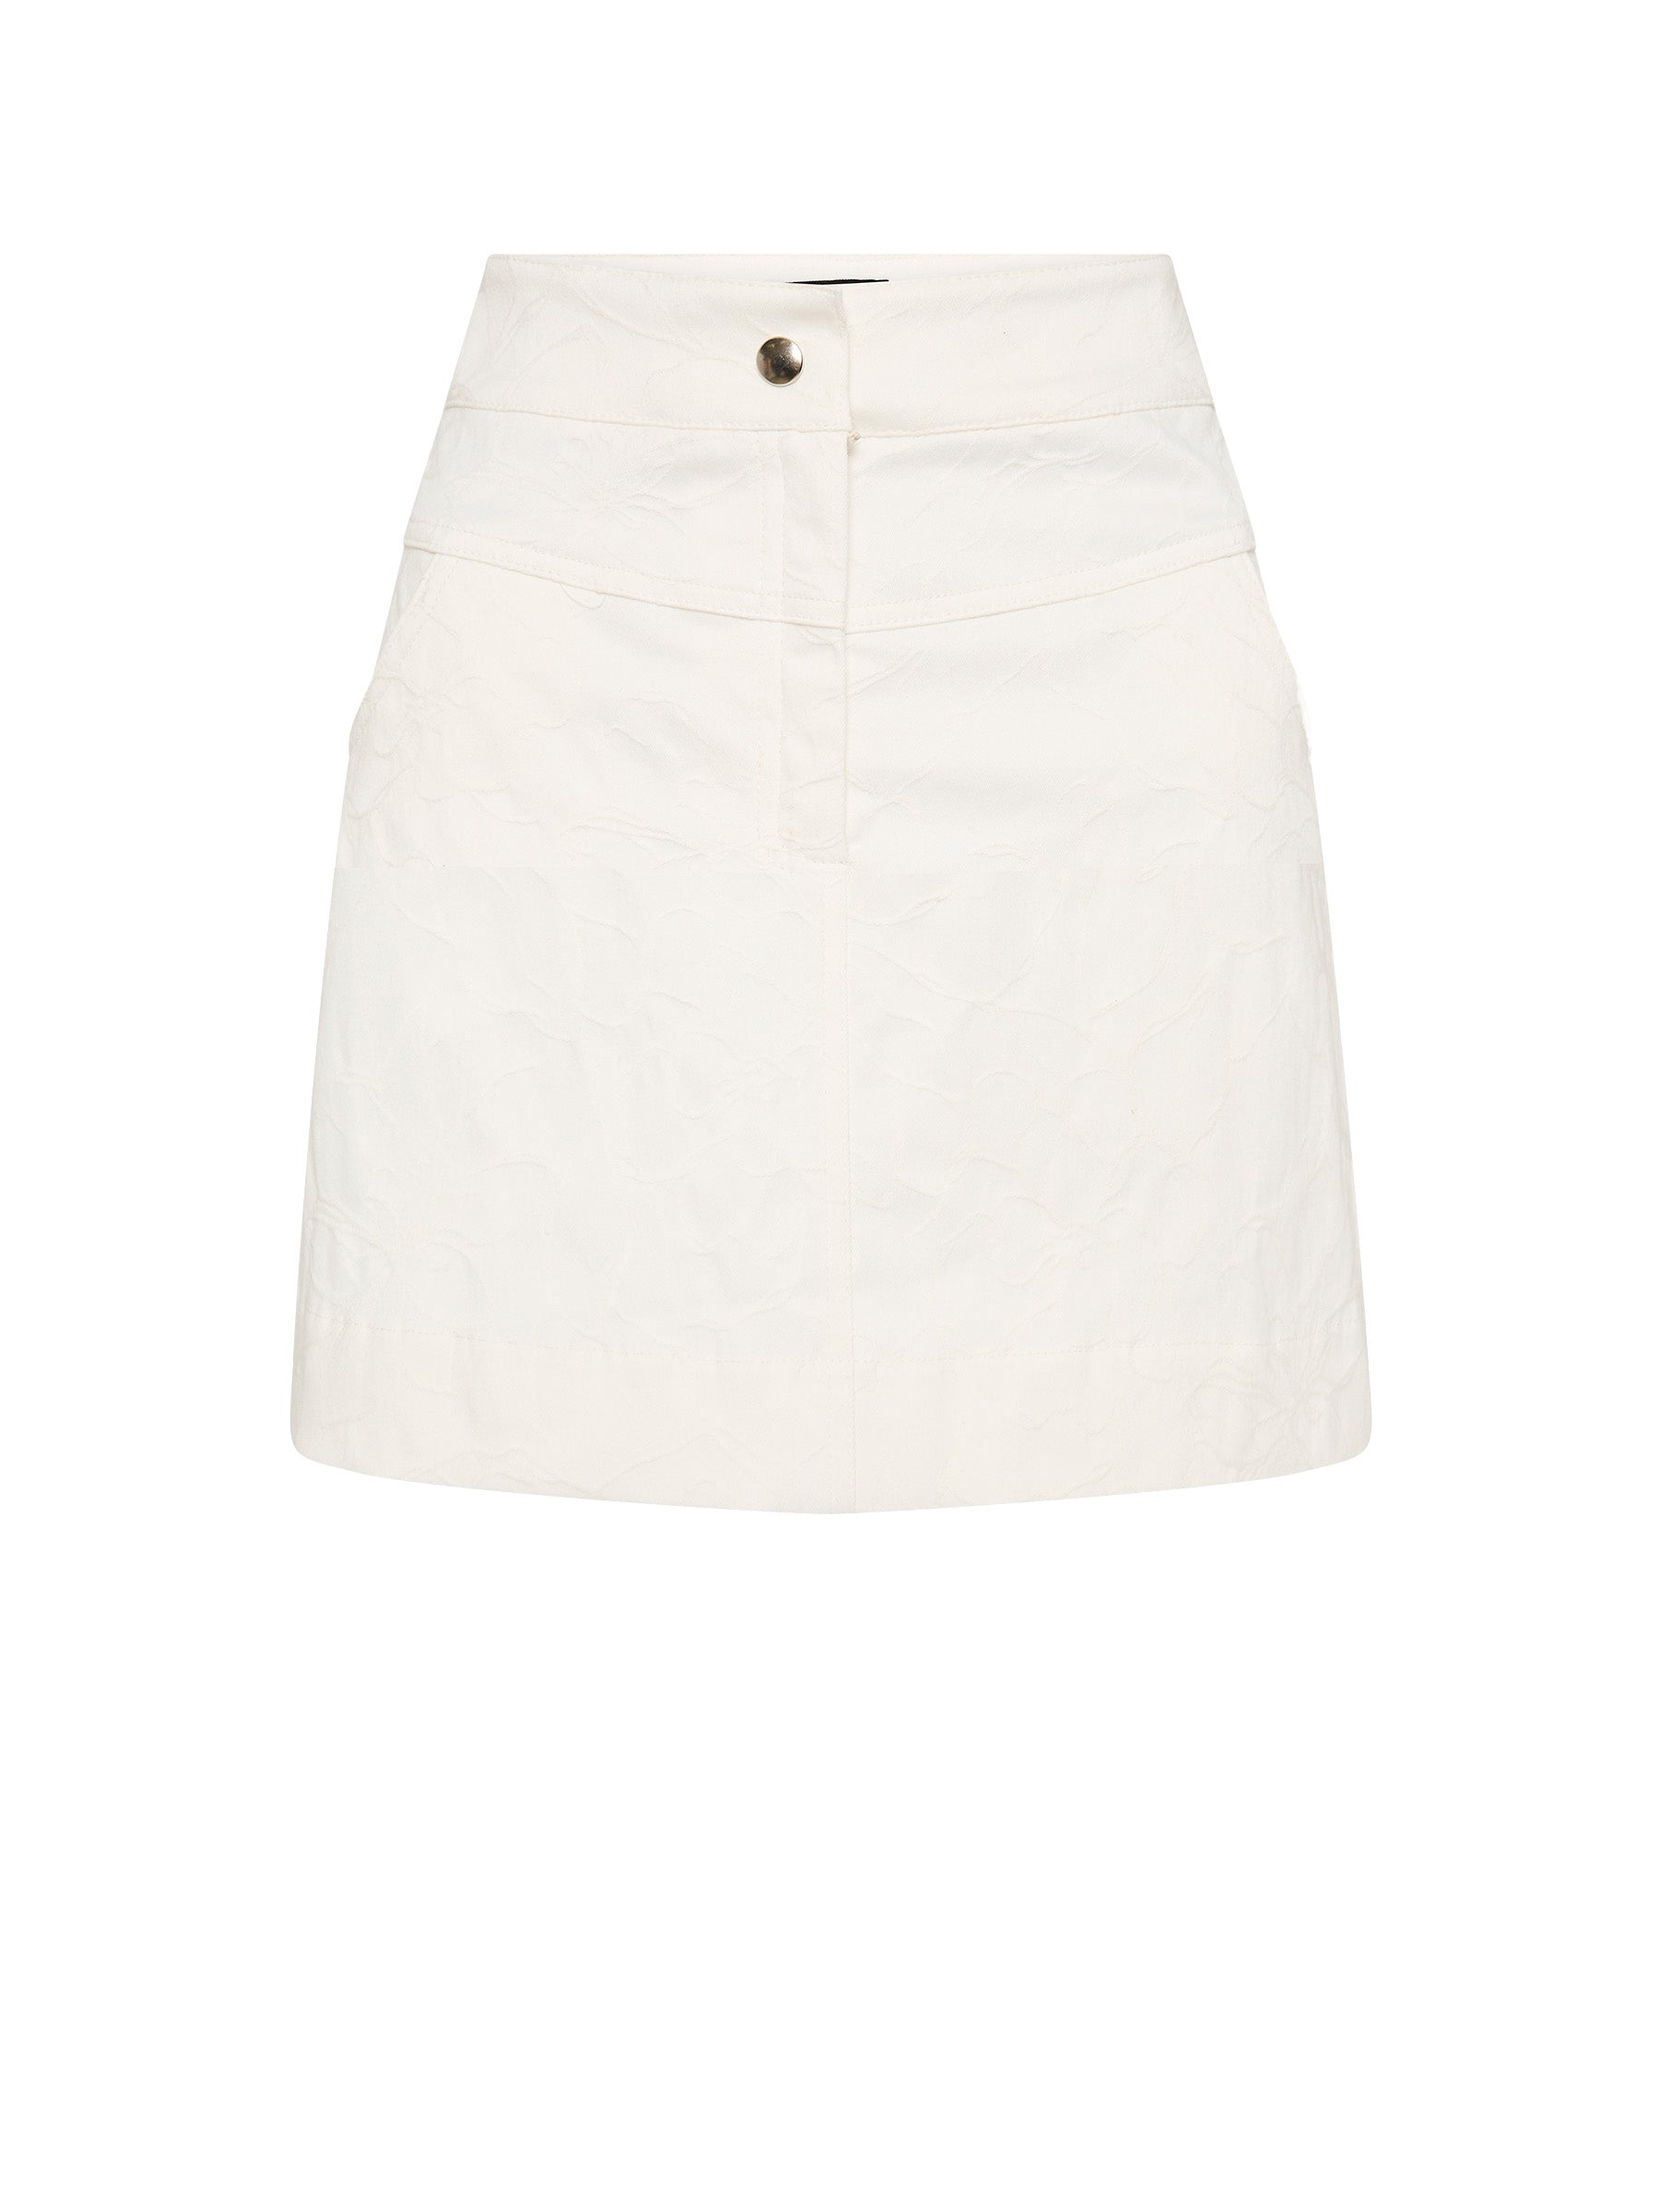 Leona Mini Skirt - Ivory White